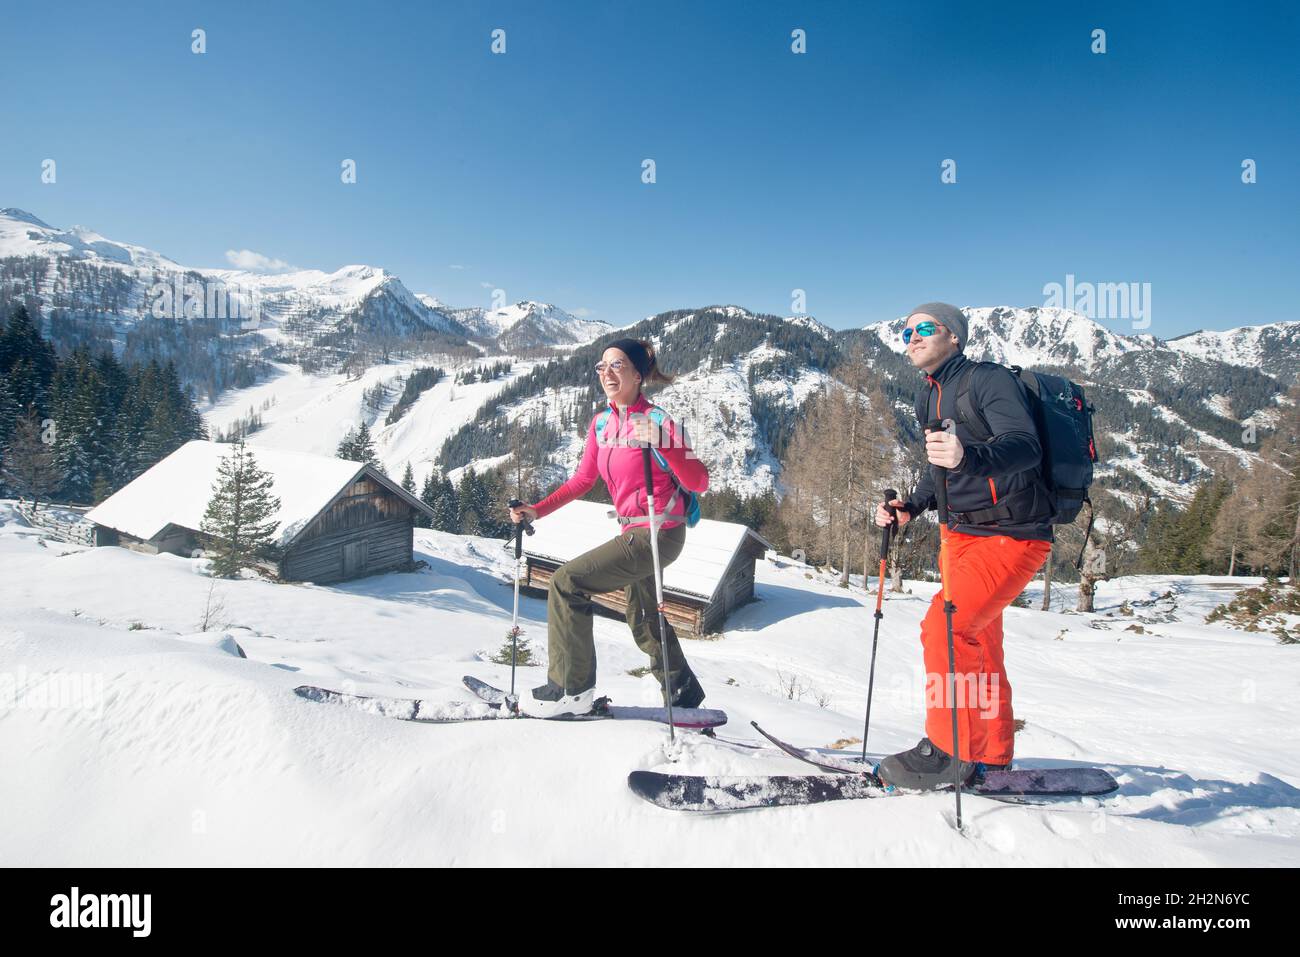 Jeune couple avec skis randonnée sur la neige Banque D'Images